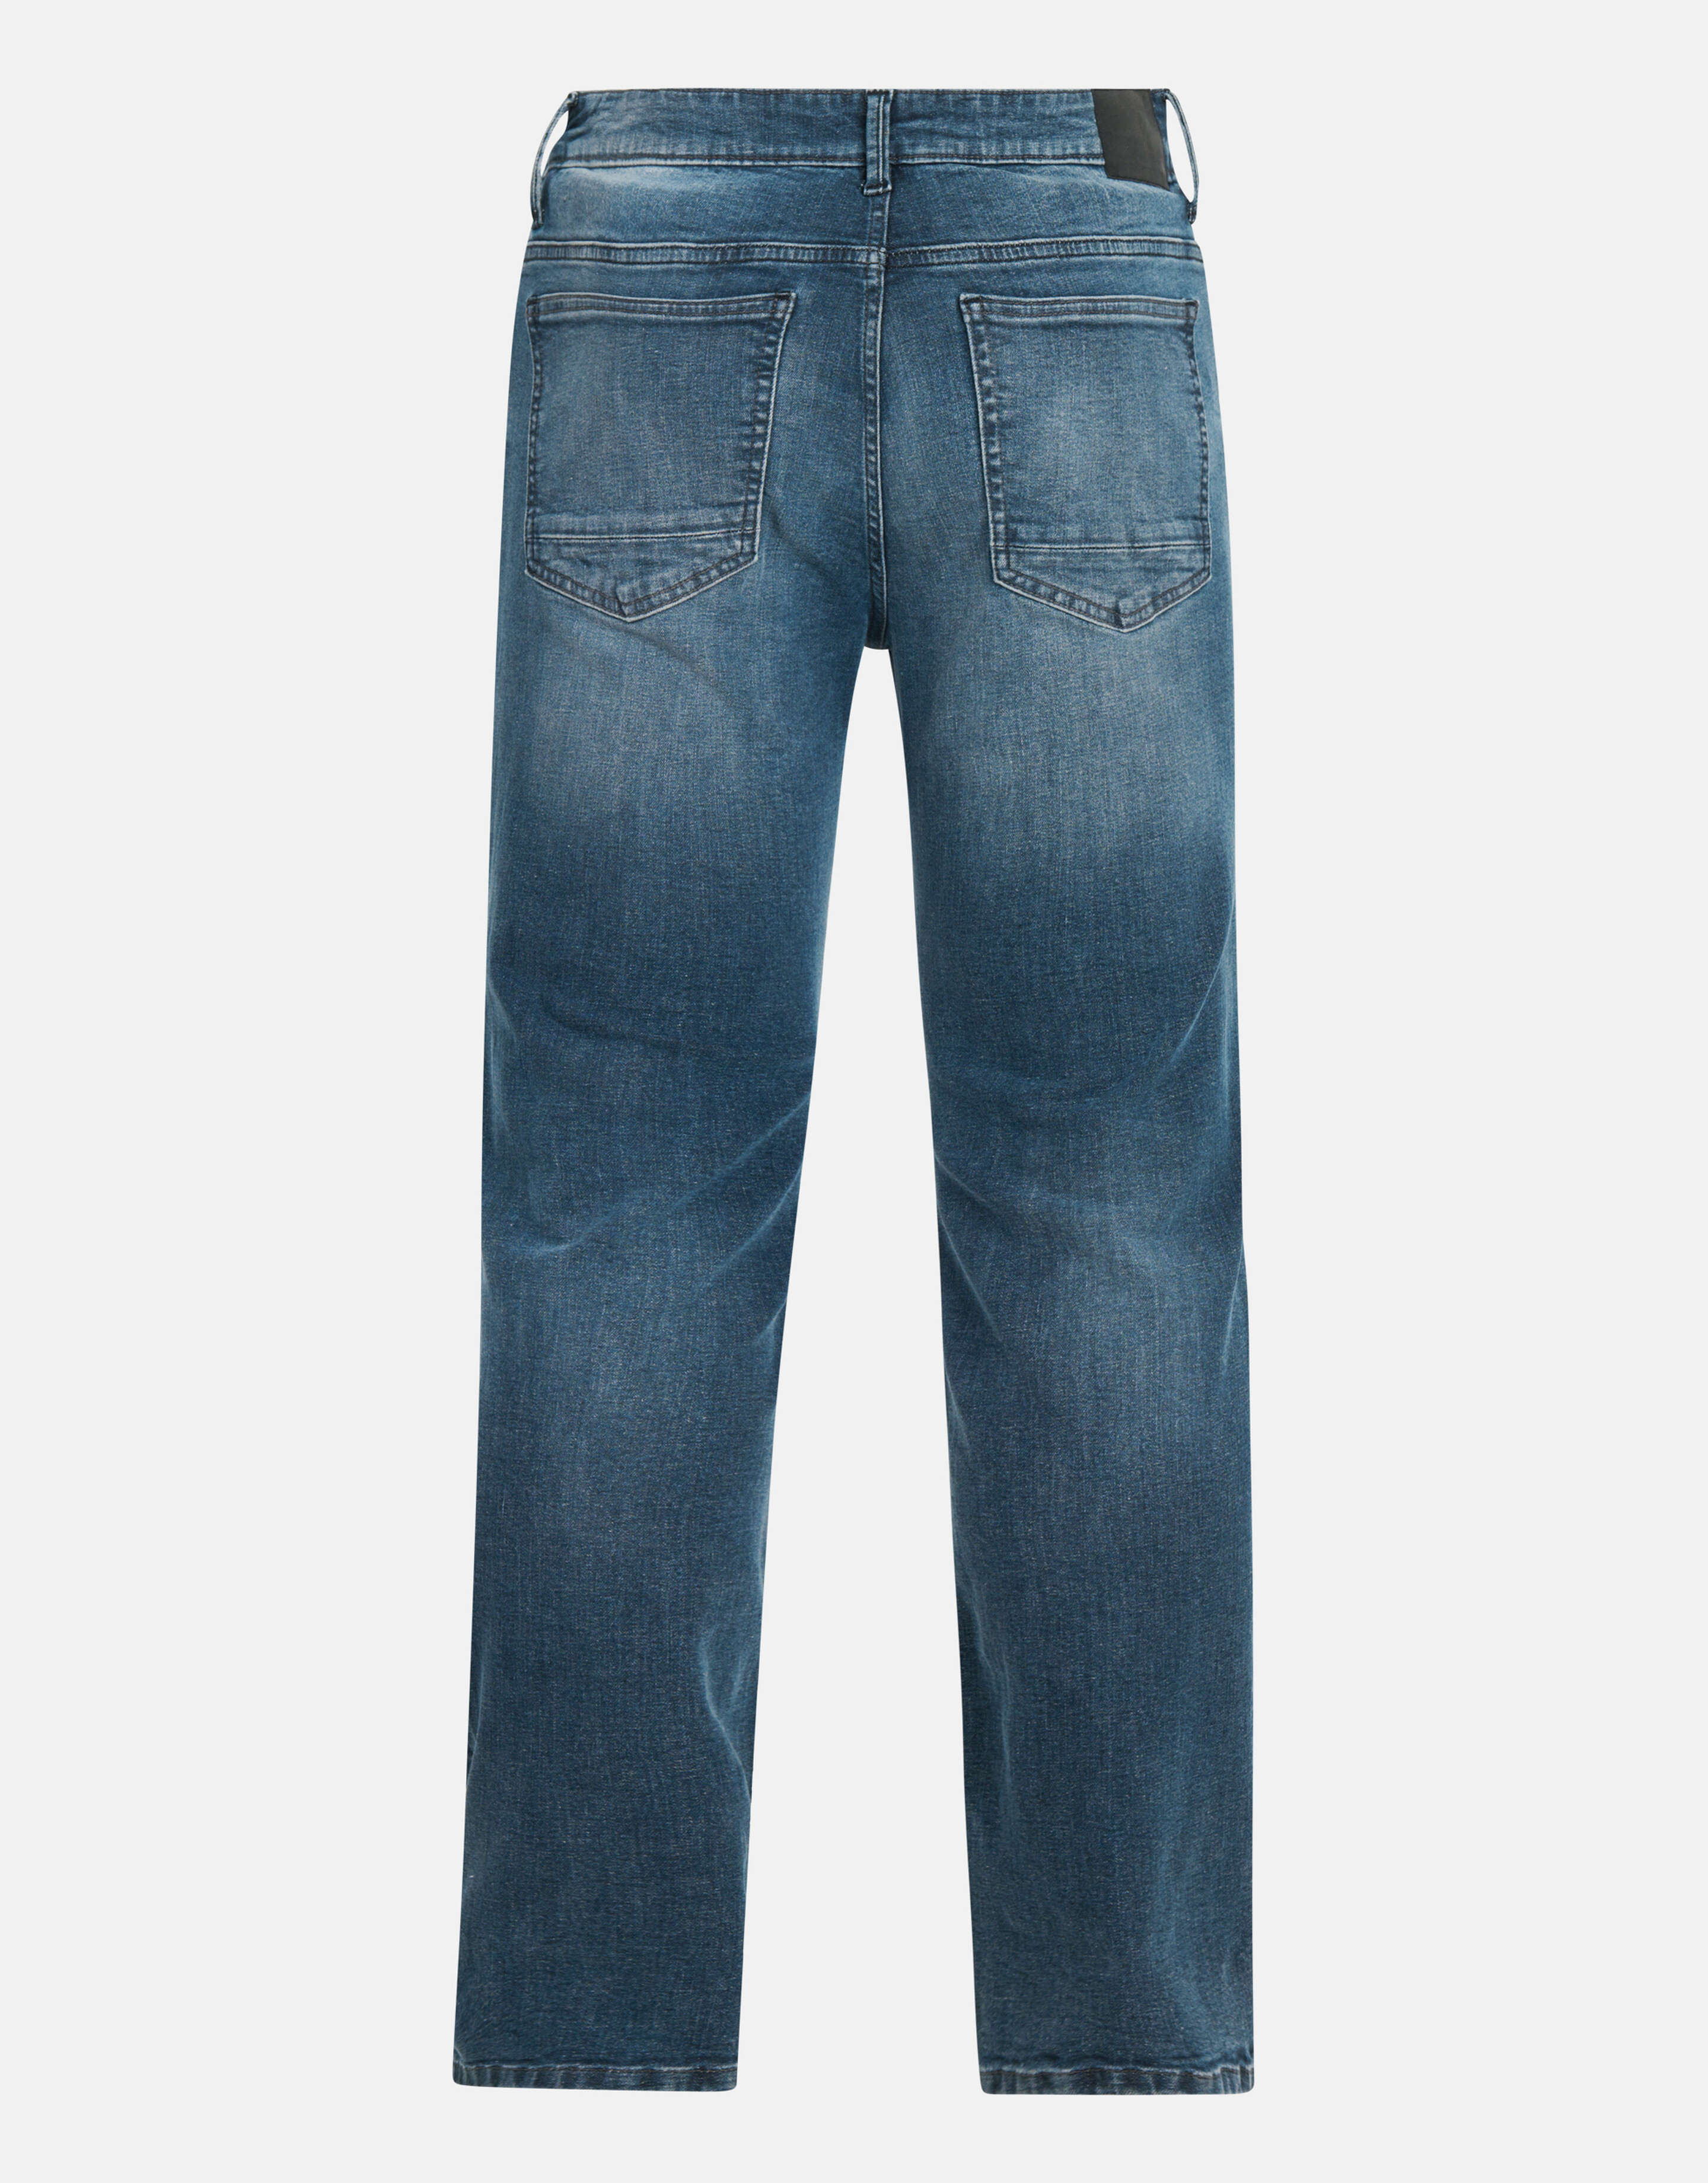 Schmale Jeans Blau/Grau L32 SHOEBY MEN